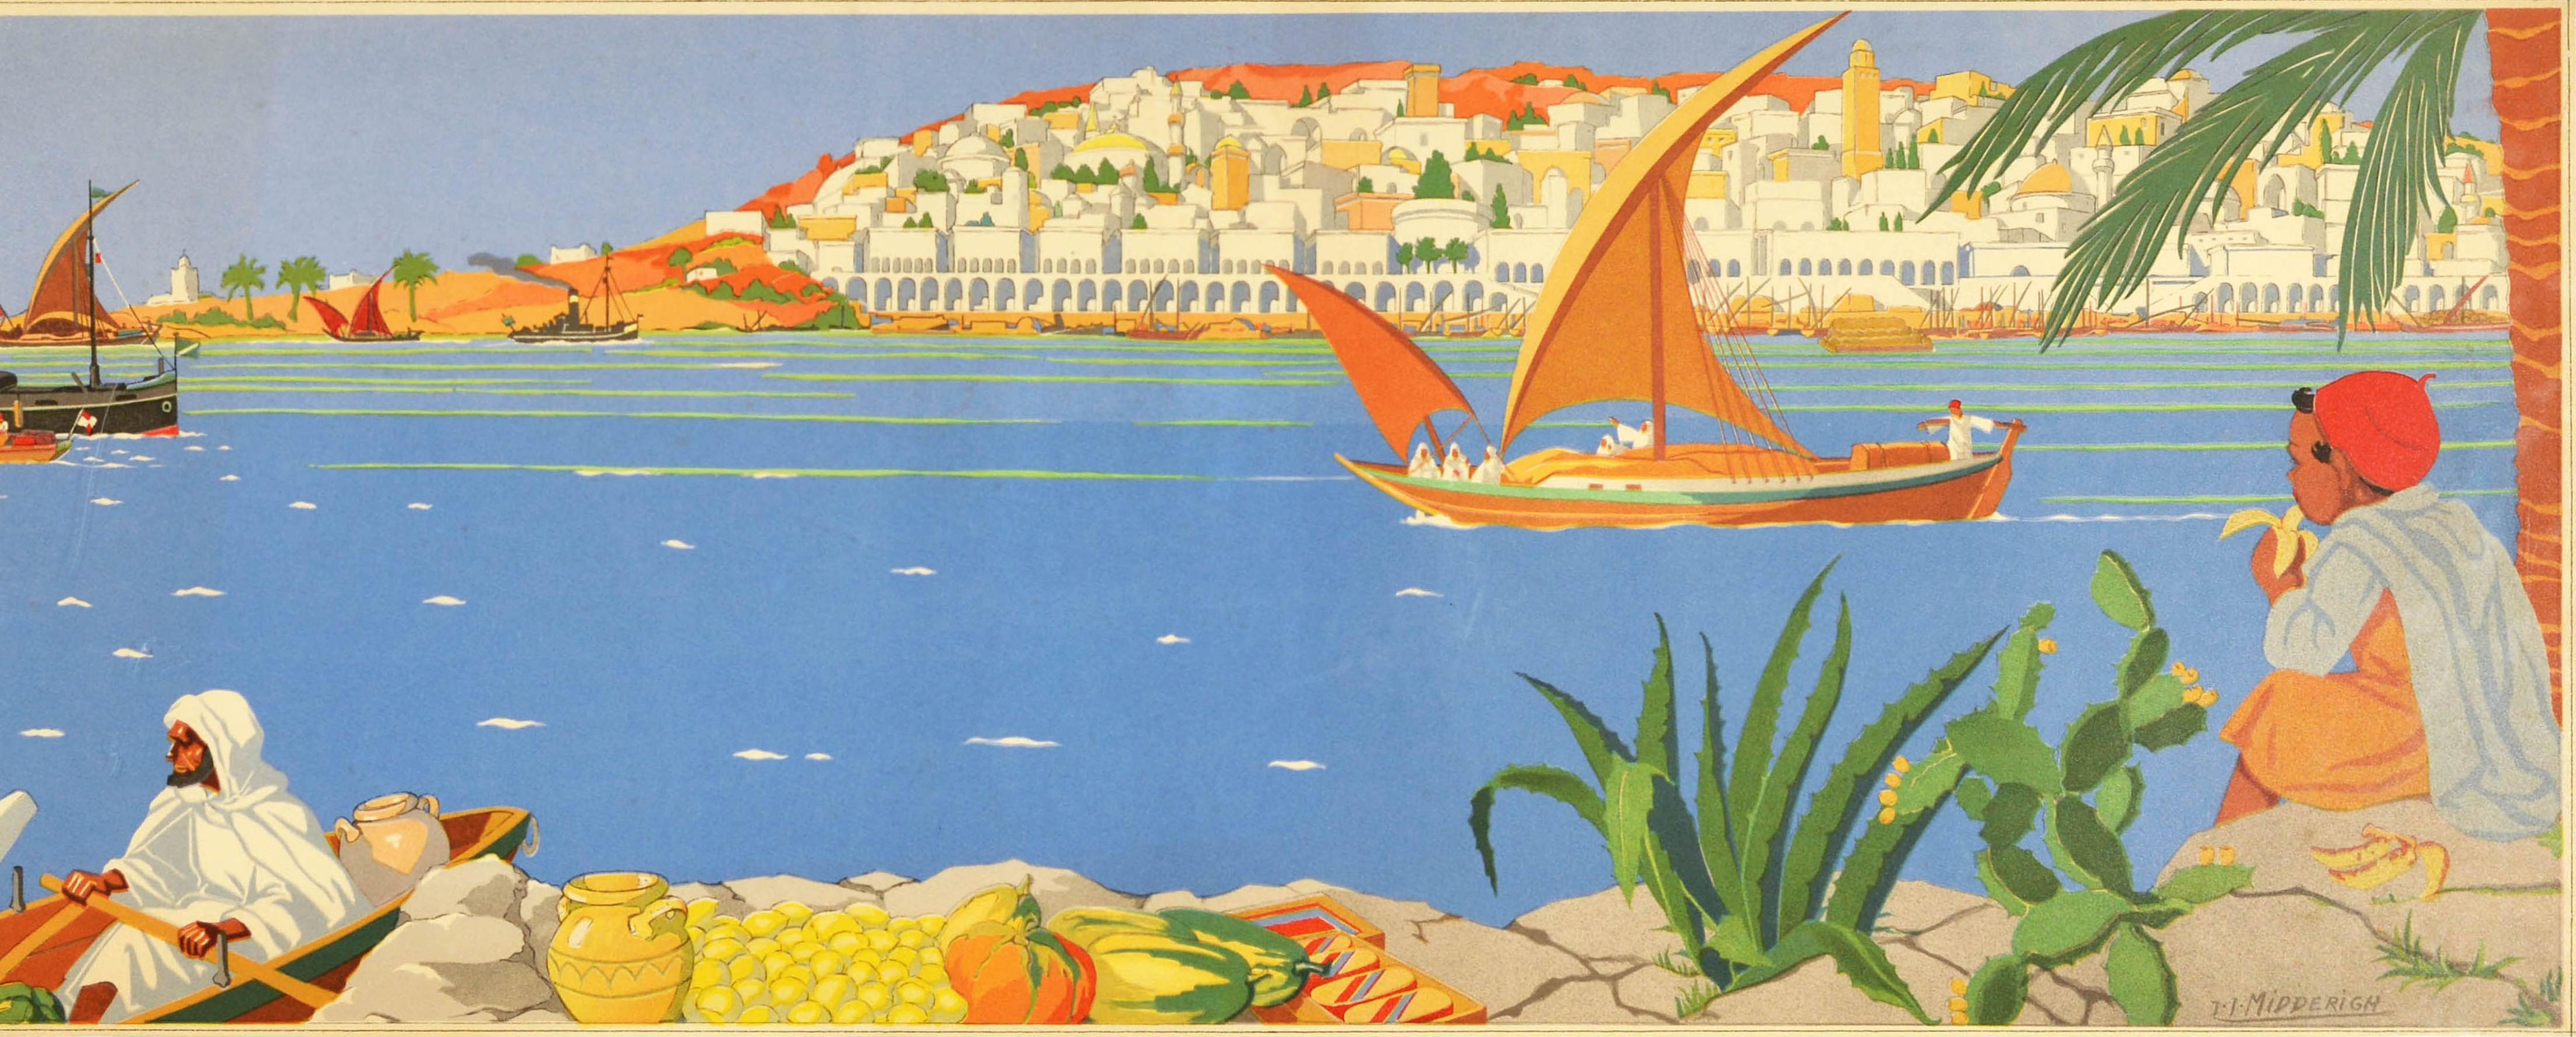 Original-Reiseplakat mit einem farbenfrohen, von Jean Jacques Midderigh (1877-1970) gemalten Landschaftsbild mit dem Titel In The Near East (Im Nahen Osten). Es zeigt Männer in Ruderbooten, die mit tropischen Früchten beladen sind, und einen Jungen,